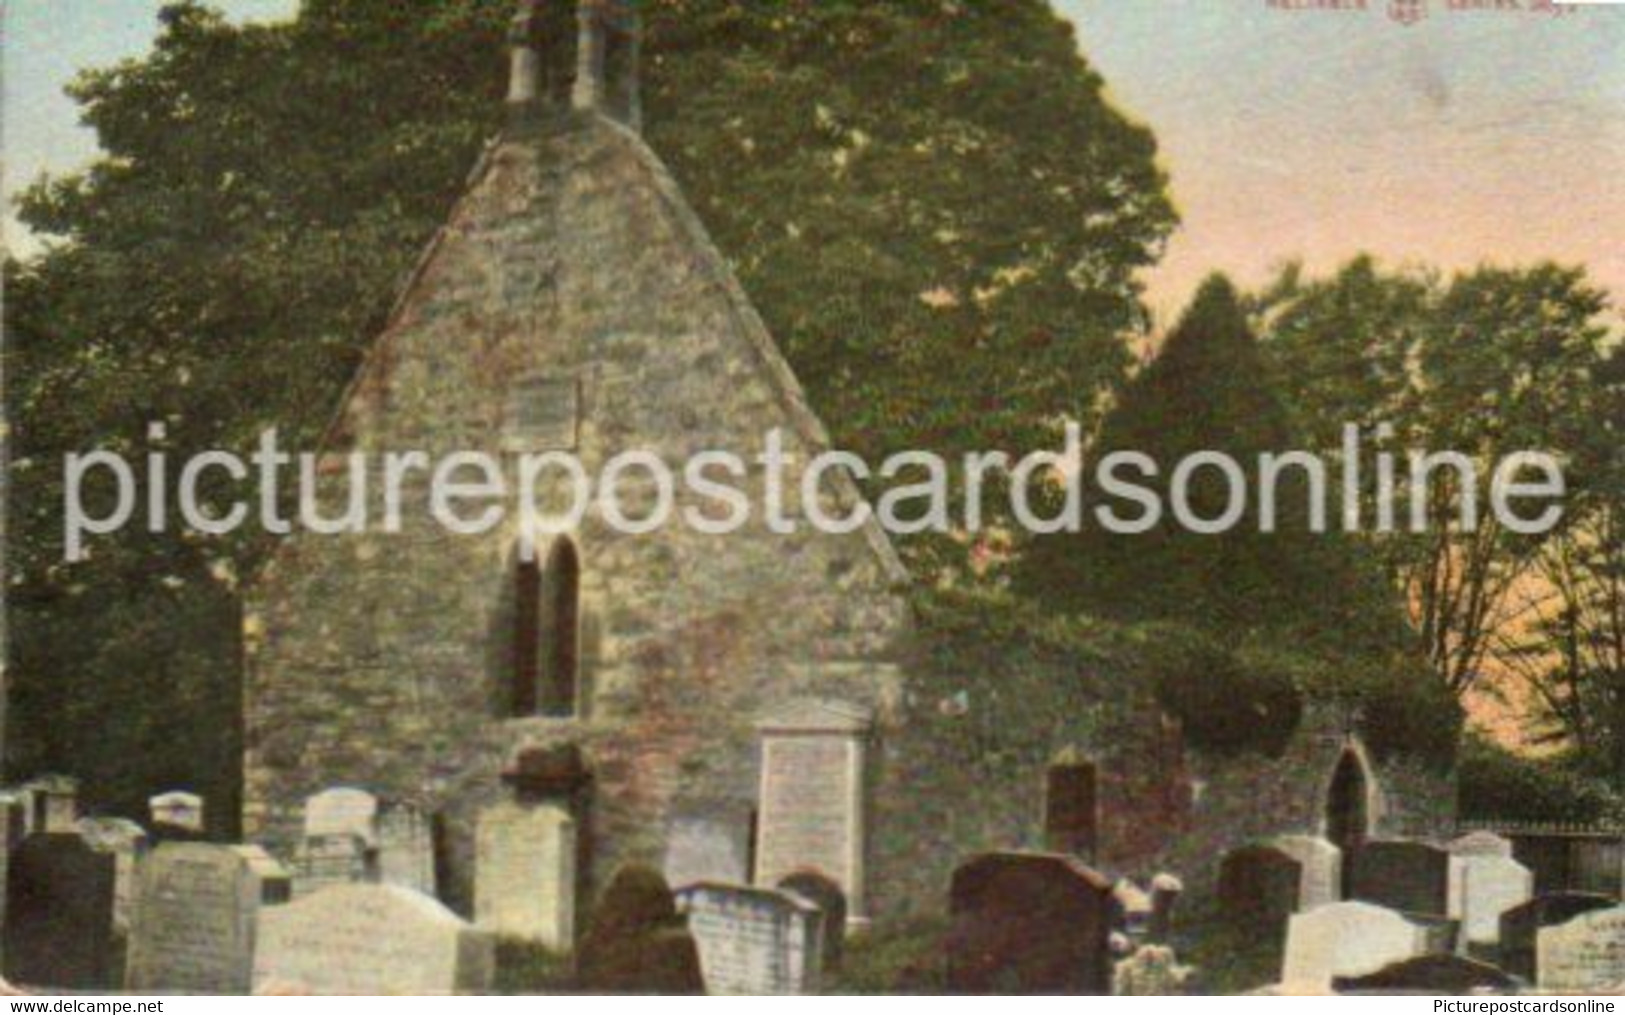 ALLOWAY KIRK AYR OLD COLOUR POSTCARD SCOTLAND OLD CHURCH - Ayrshire